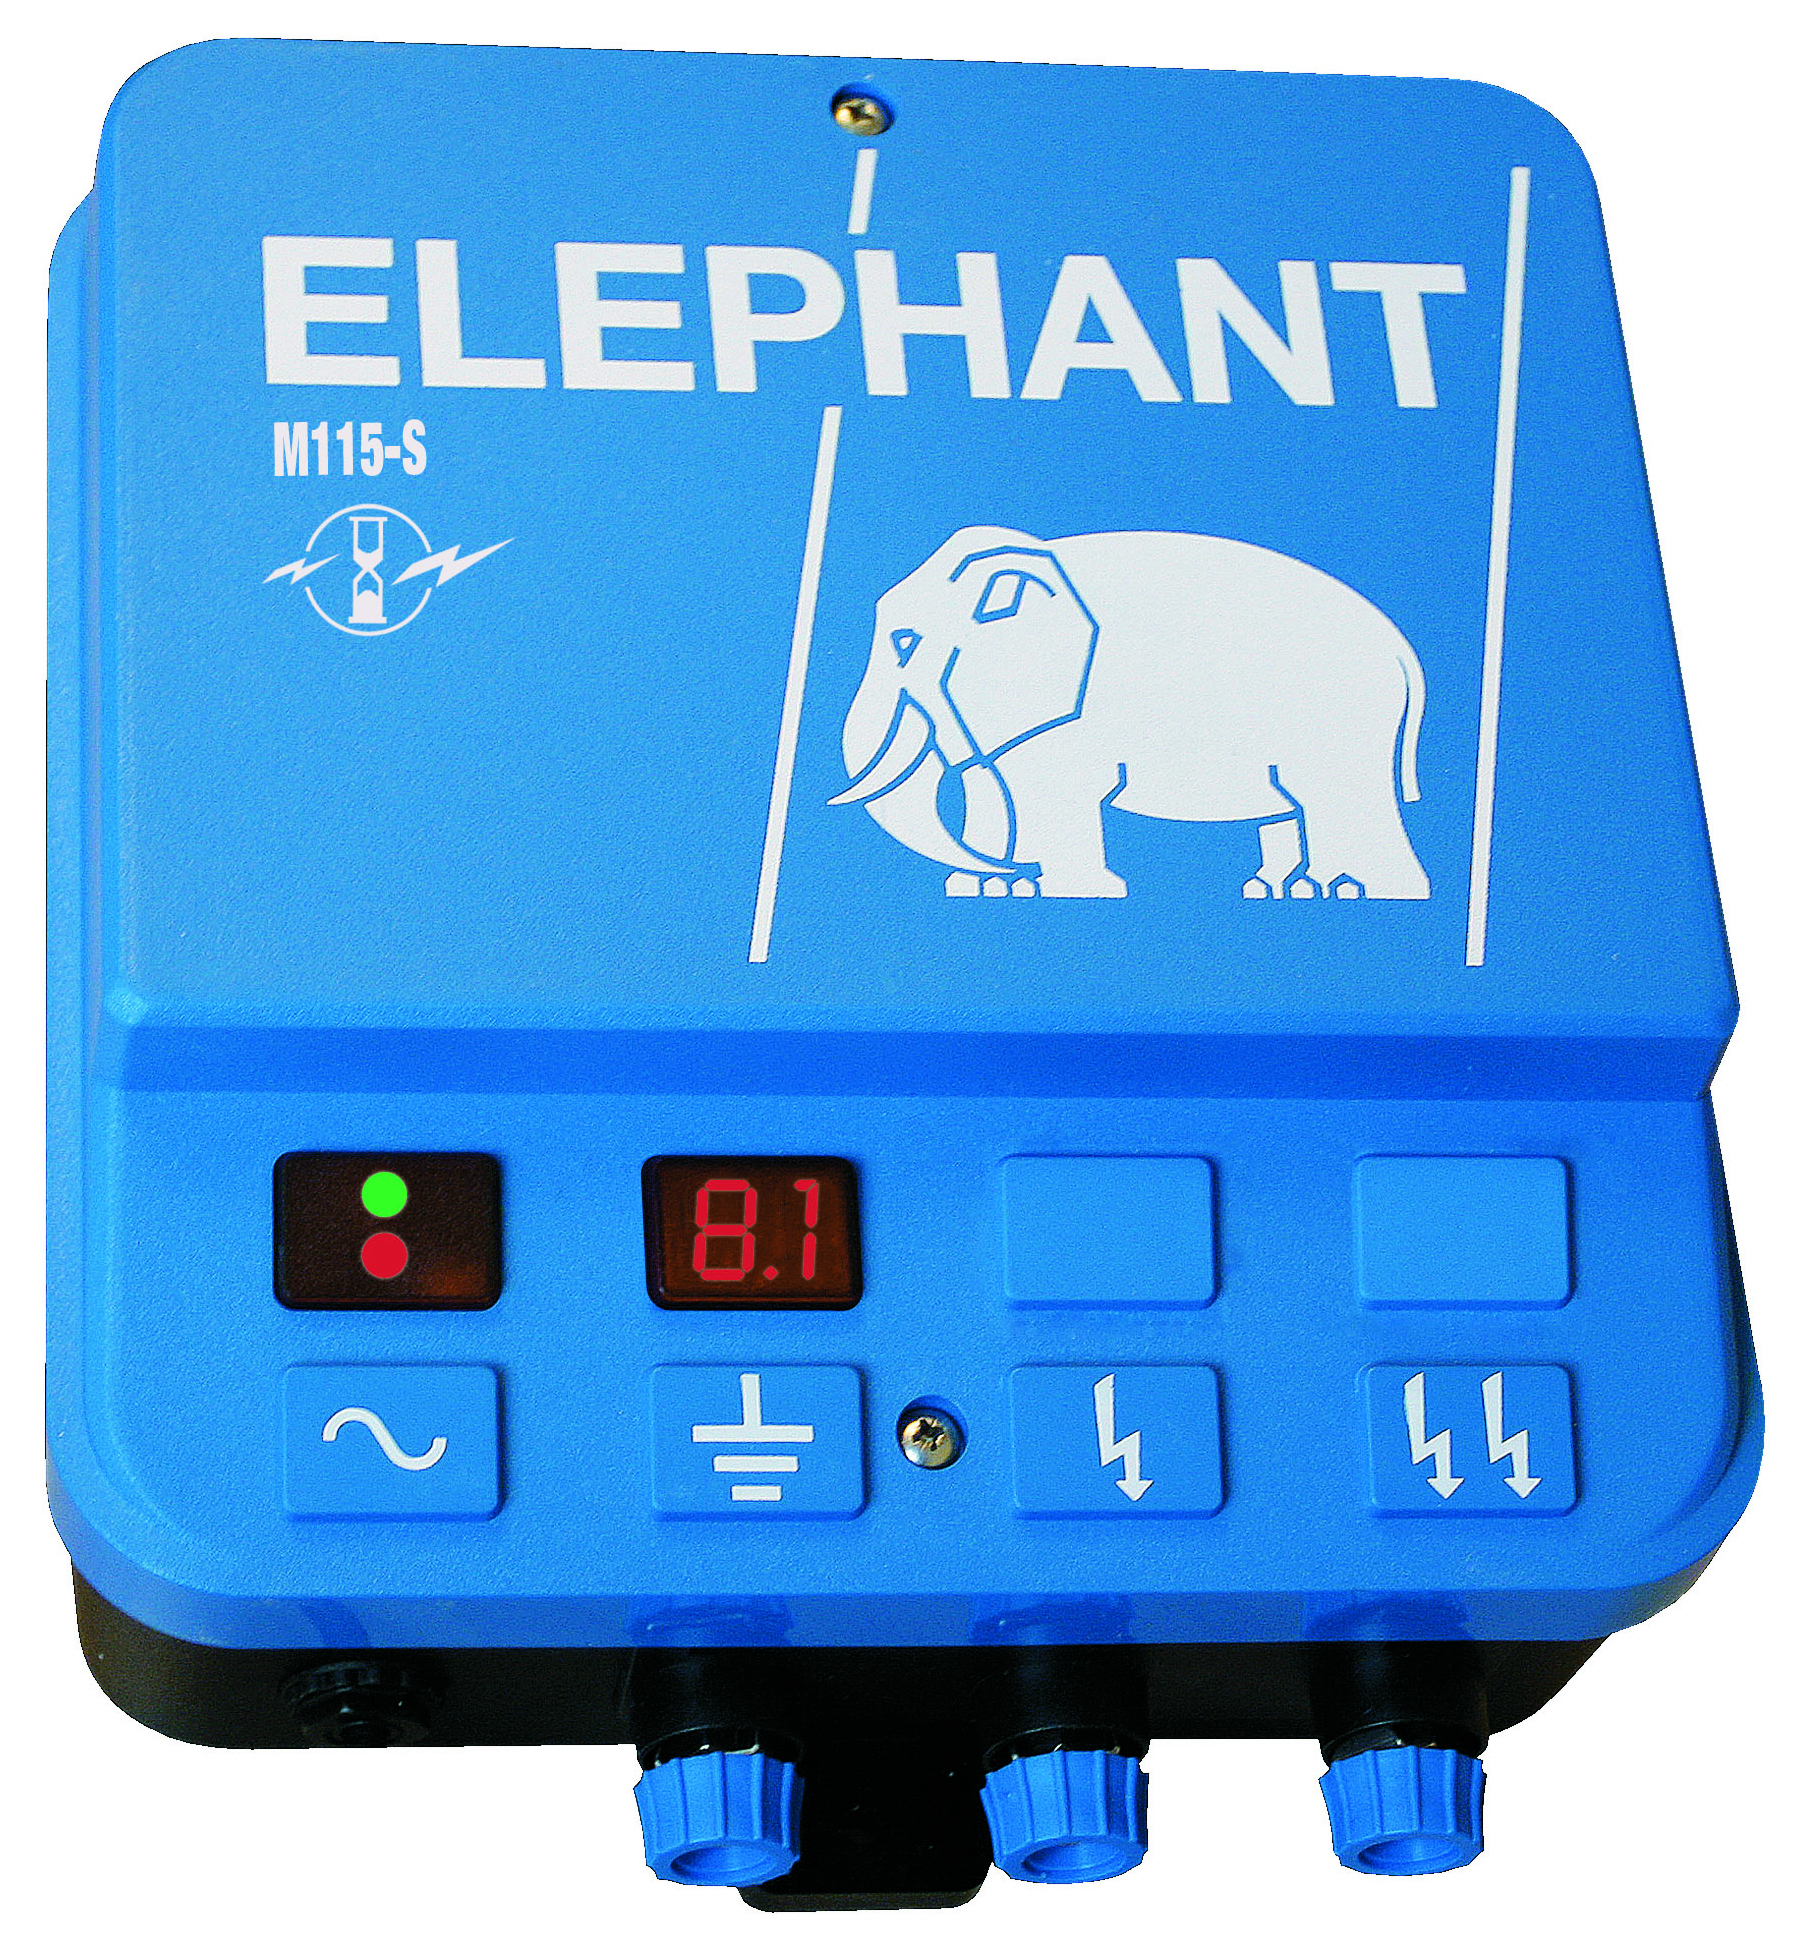 Elhegn Elephant (11,5J) - Miljøfoder